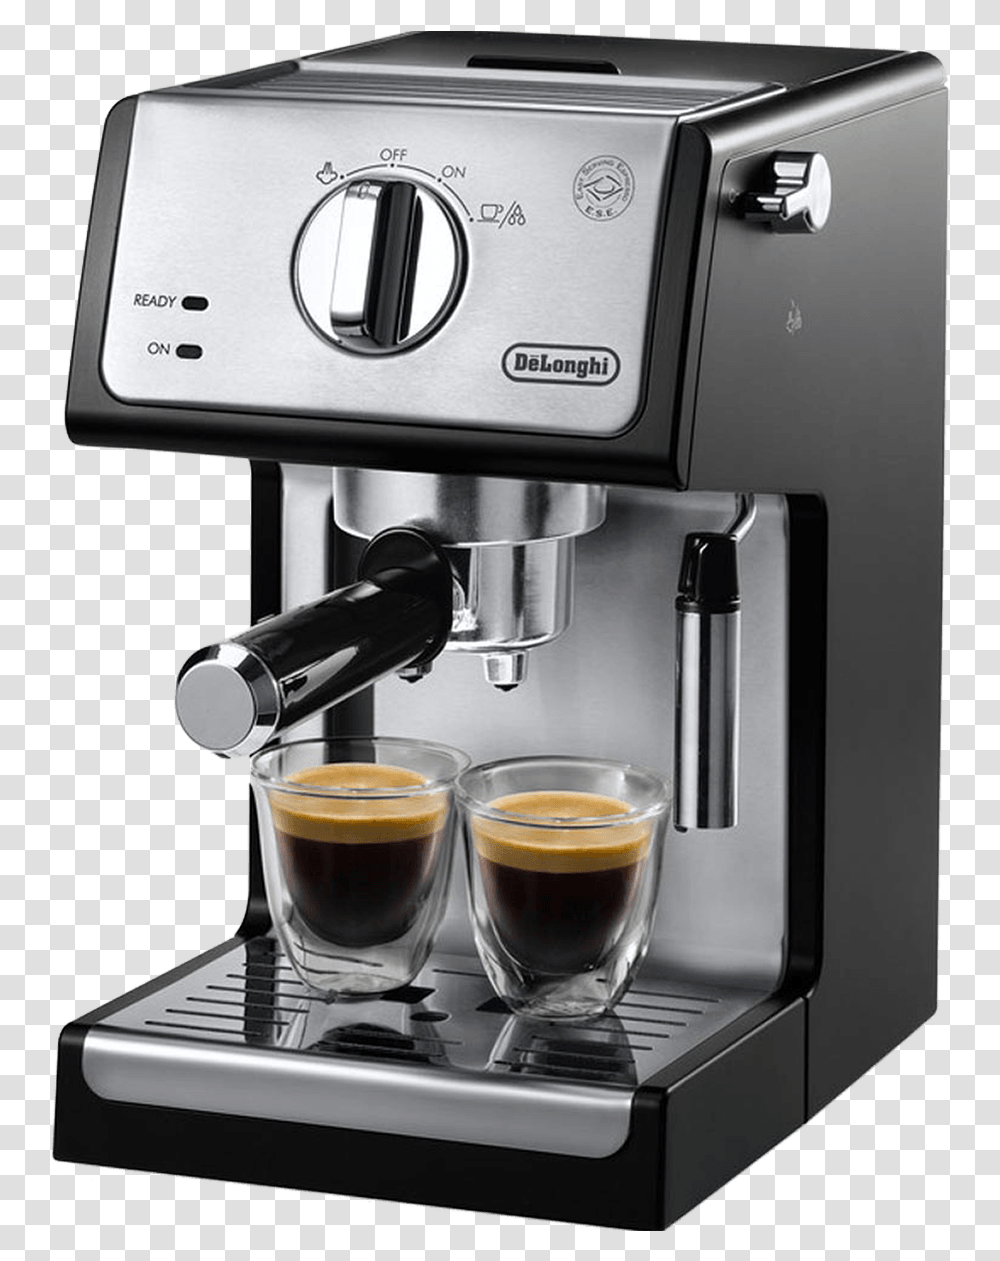 Coffee Pot Delonghi Espresso Maker, Coffee Cup, Beverage, Drink, Mixer Transparent Png